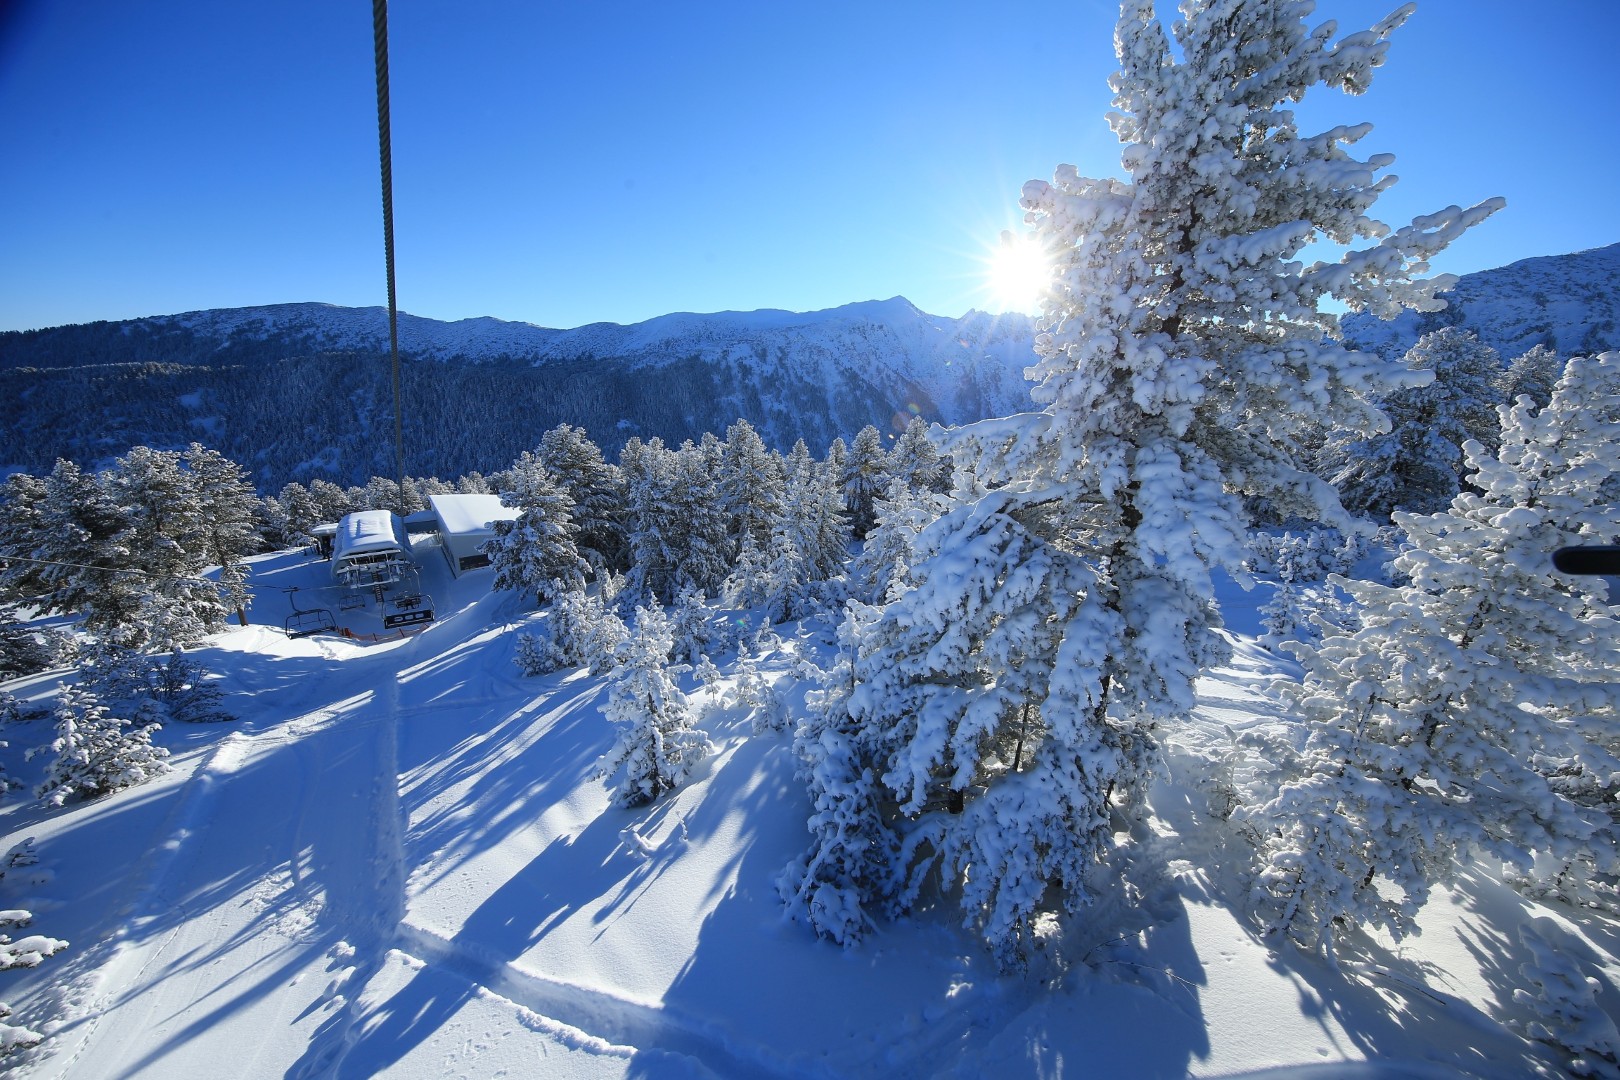 אתר סקי בנסקו בולגריה (צילום: האתר הרשמי)